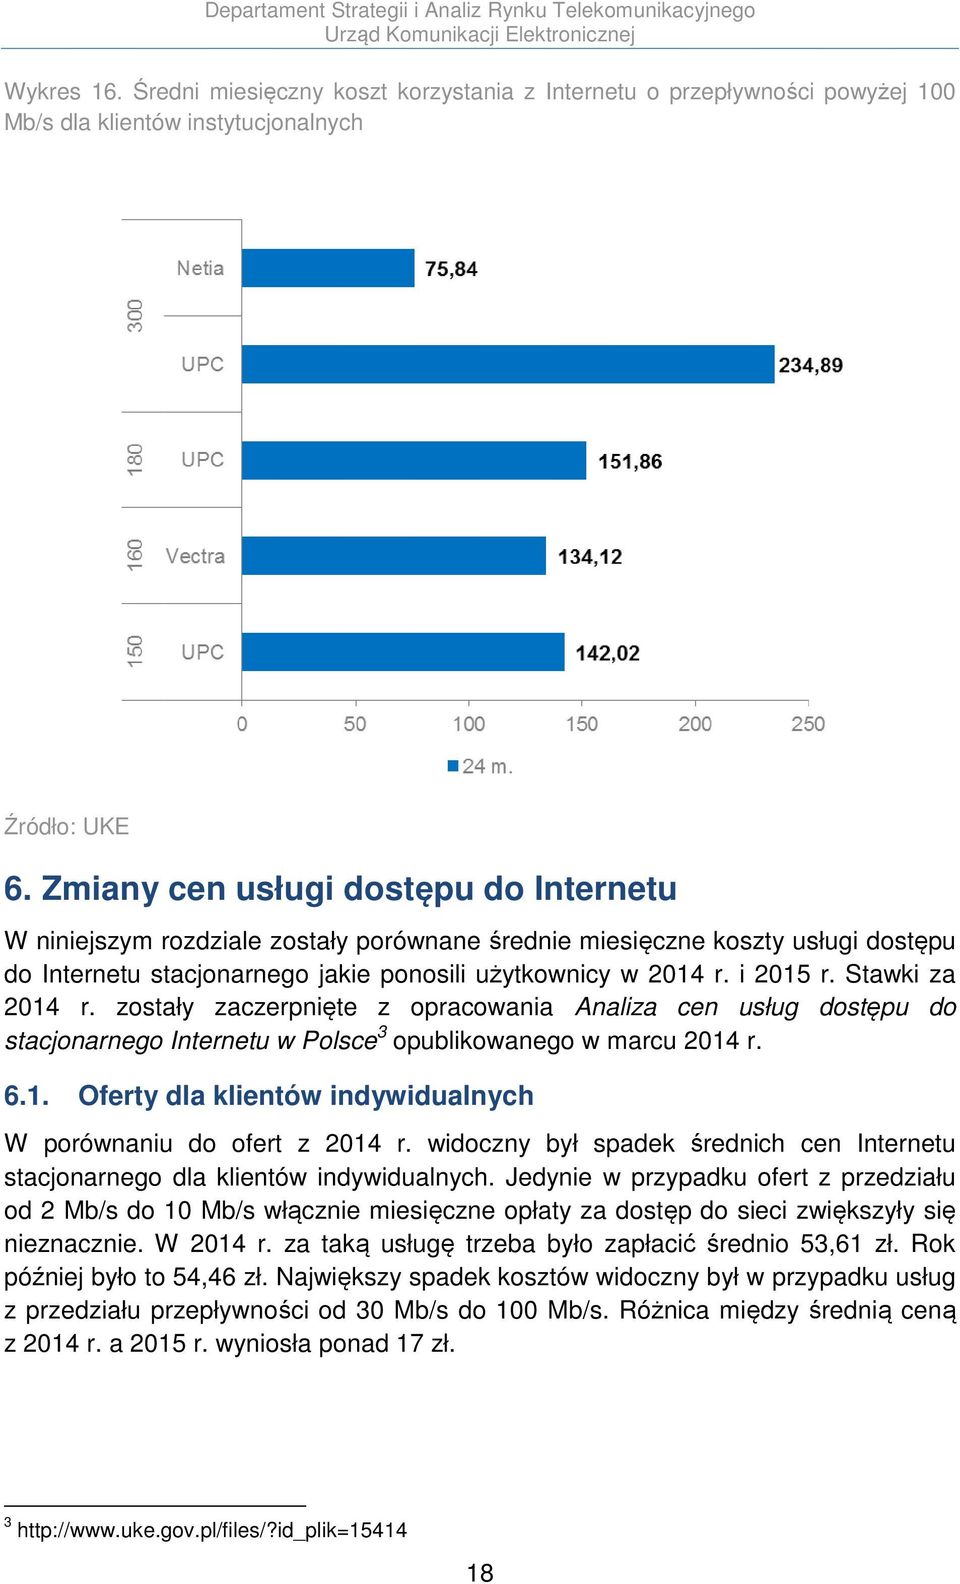 Stawki za 2014 r. zostały zaczerpnięte z opracowania Analiza cen usług dostępu do stacjonarnego Internetu w Polsce 3 opublikowanego w marcu 2014 r. 6.1. Oferty dla klientów indywidualnych W porównaniu do ofert z 2014 r.